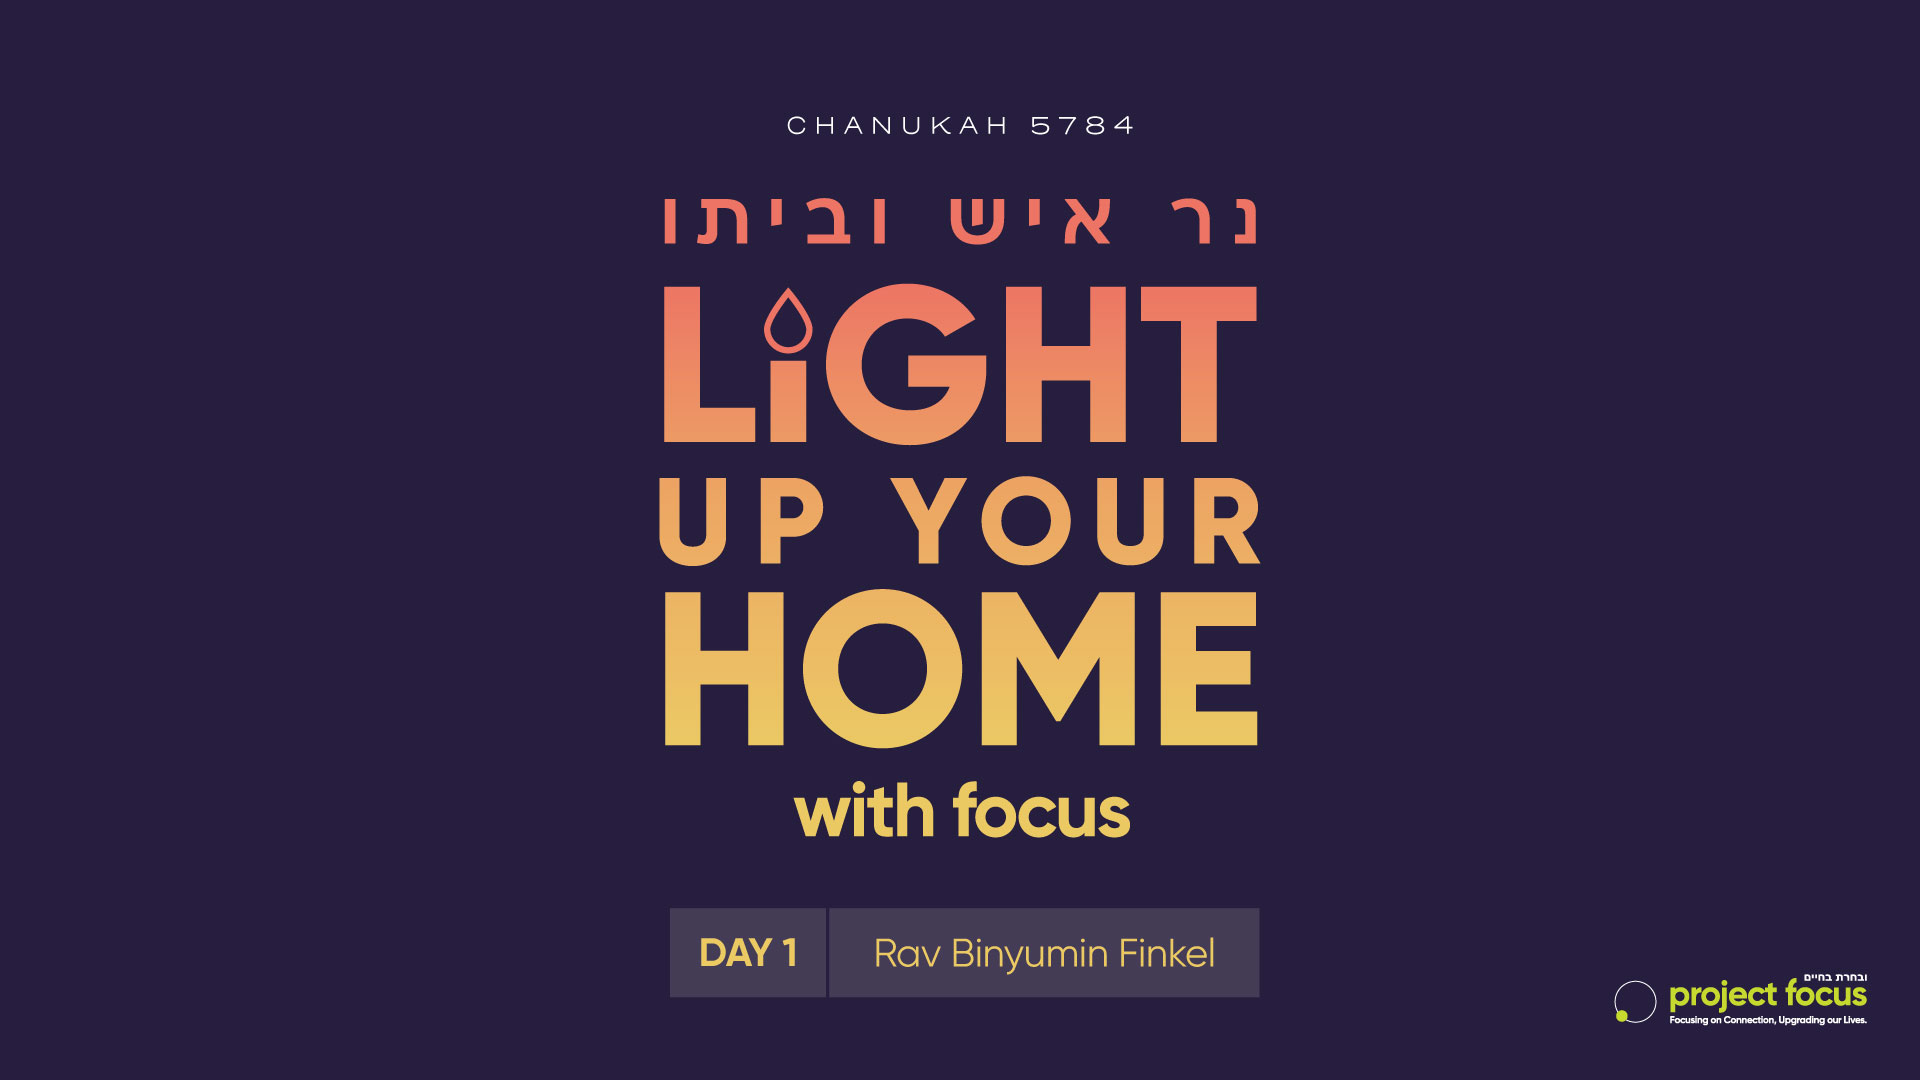 Focus this Chanukah 5784